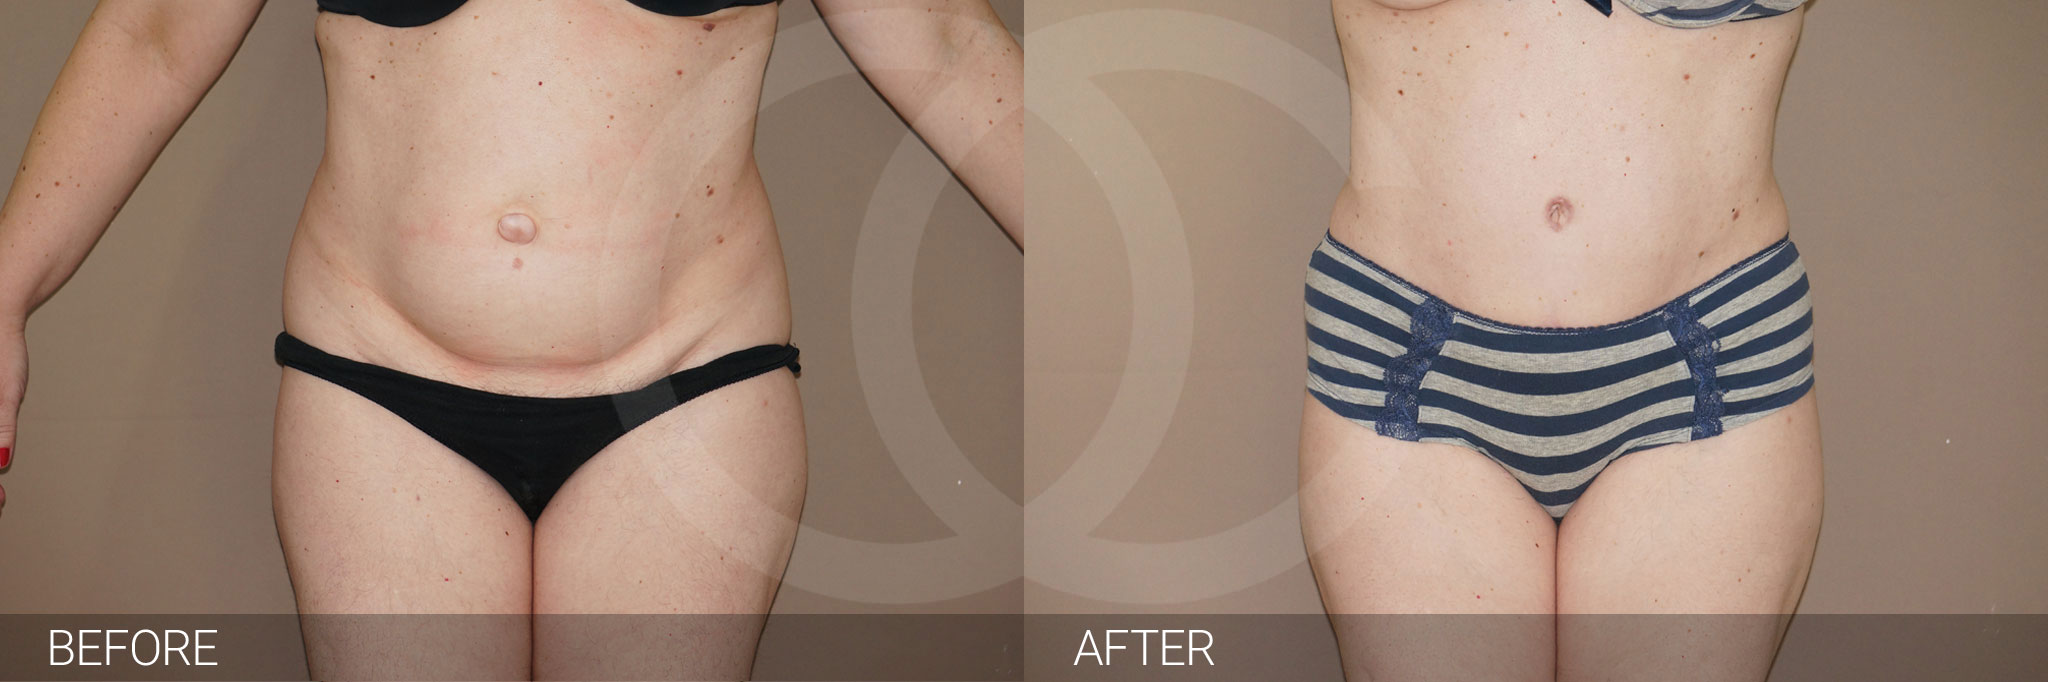 Antes y después Abdominoplastia con liposucción fotos reales de pacientes 7.1 | Ocean Clinic Marbella Madrid